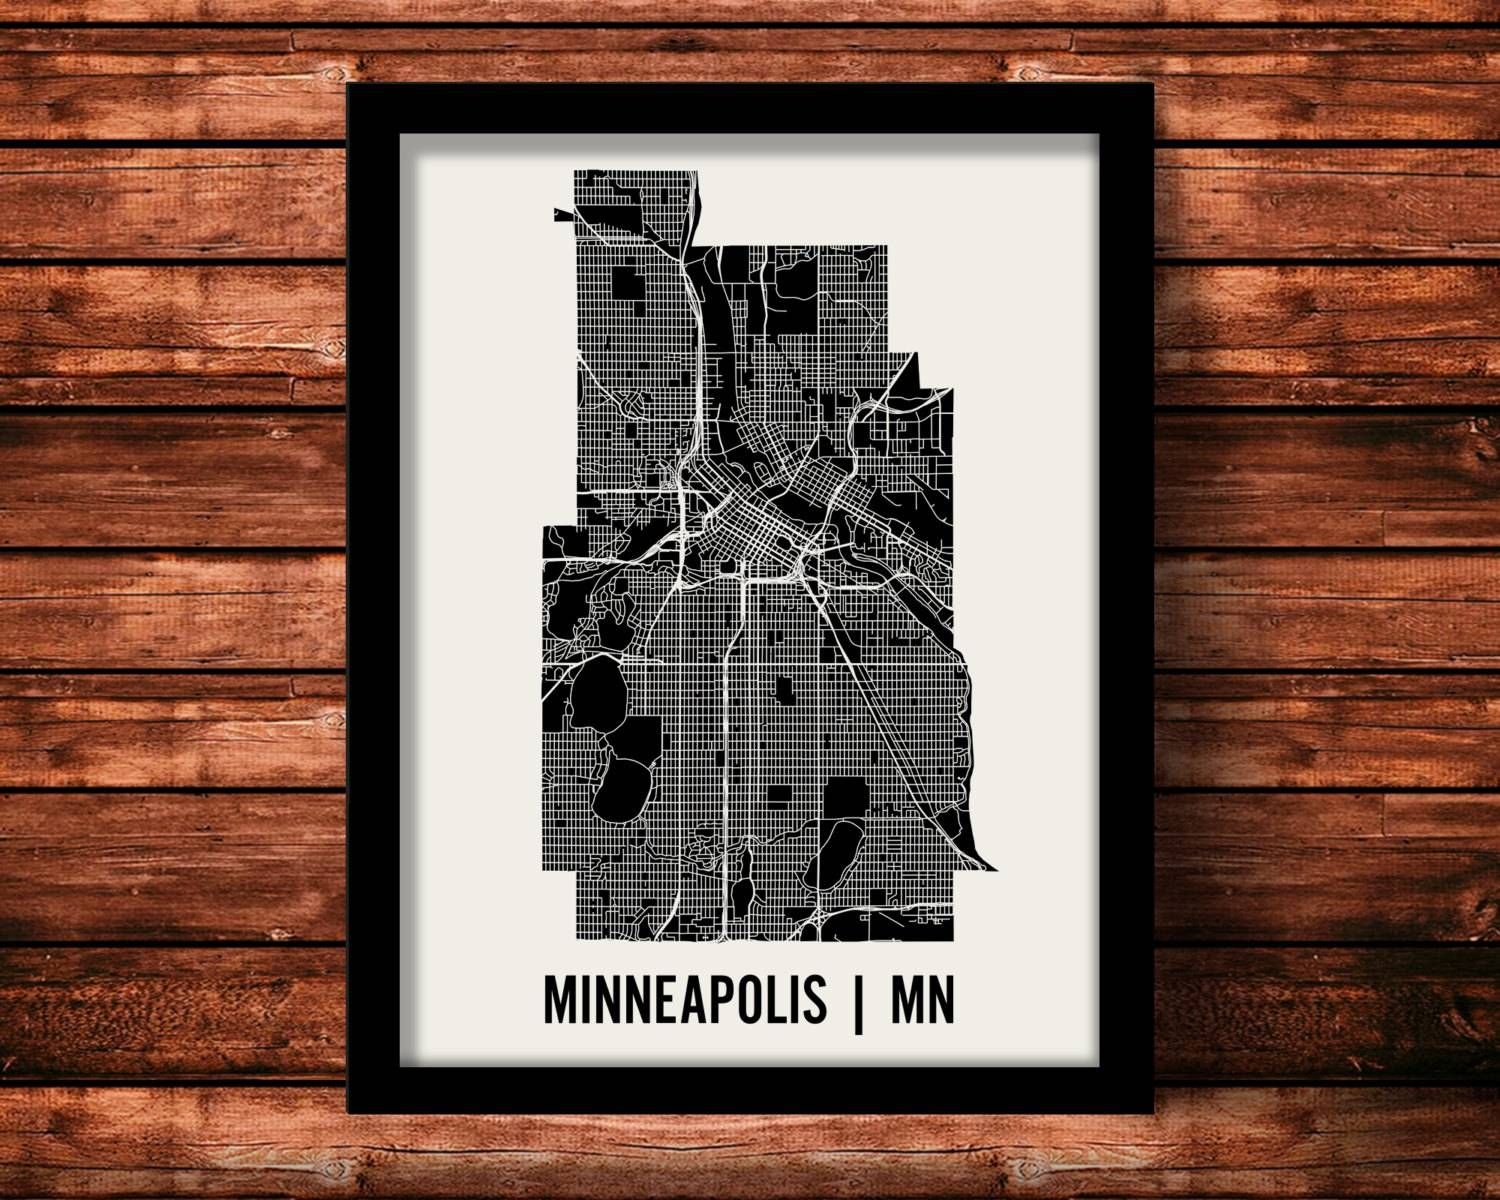 Wall Art Designs: Best Minneapolis Wall Art Stores Minneapolis Throughout Current Minneapolis Wall Art (View 2 of 20)